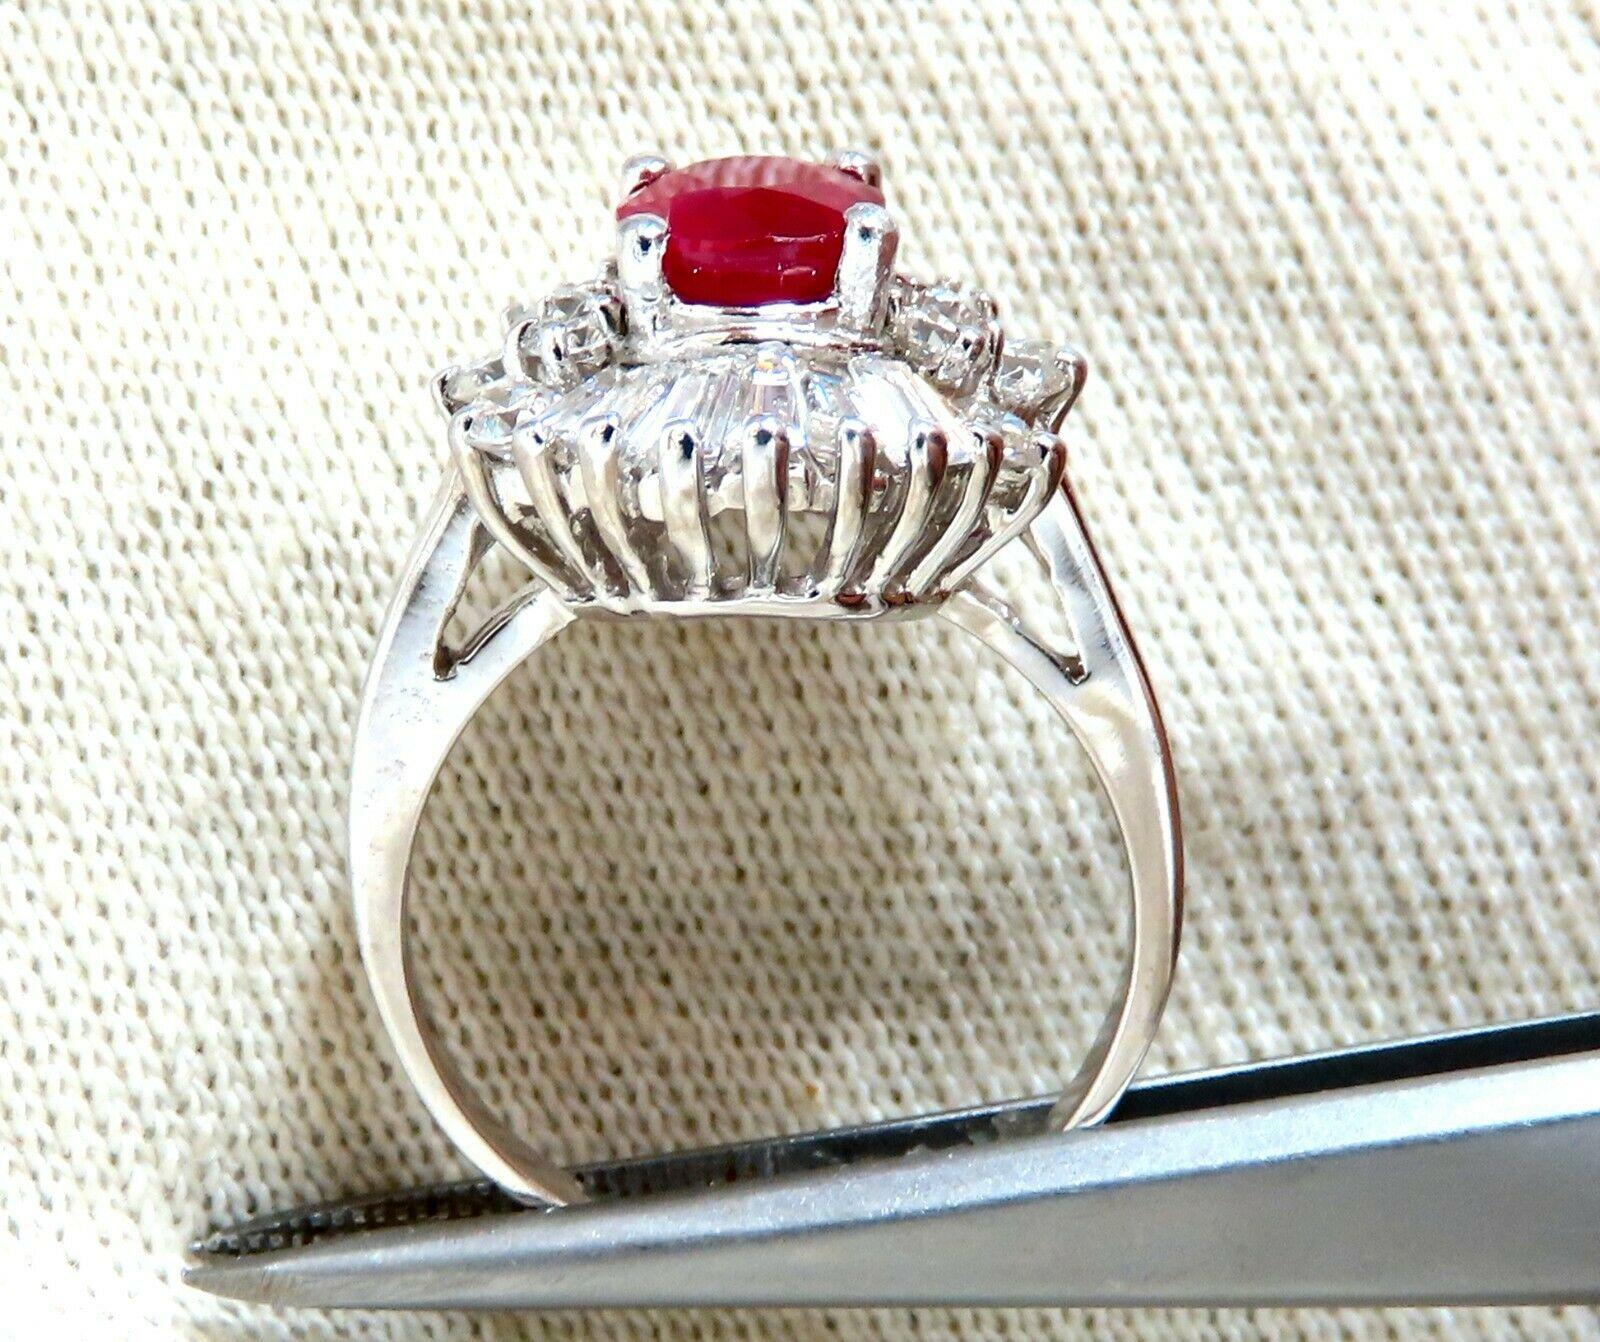 Bague de cocktail Ballerina en diamants rubis certifiés GIA.

1.75ct. GIA Rubis rouge brillant ovale

Rapport : 5192200392

(VS) Clarté et transparence.

7,89 X 6,26 X 4,07mm

GIA : chaleur, Birmanie



1,70 ct de diamants ronds et